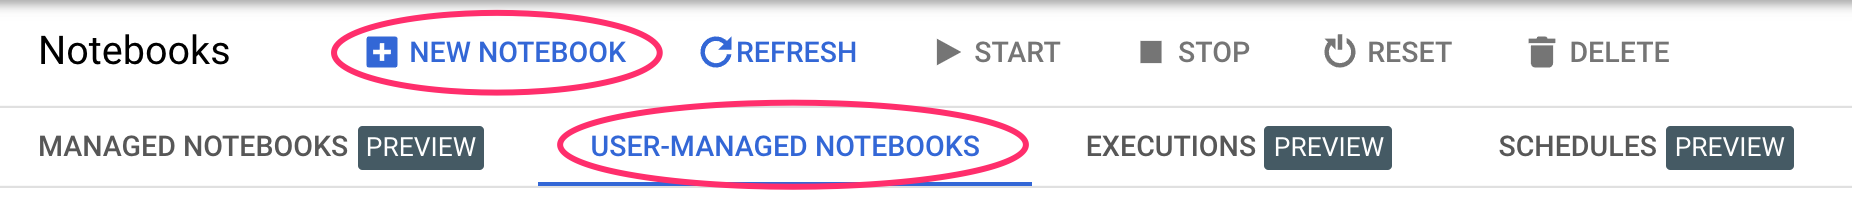 יצירת notebook חדש